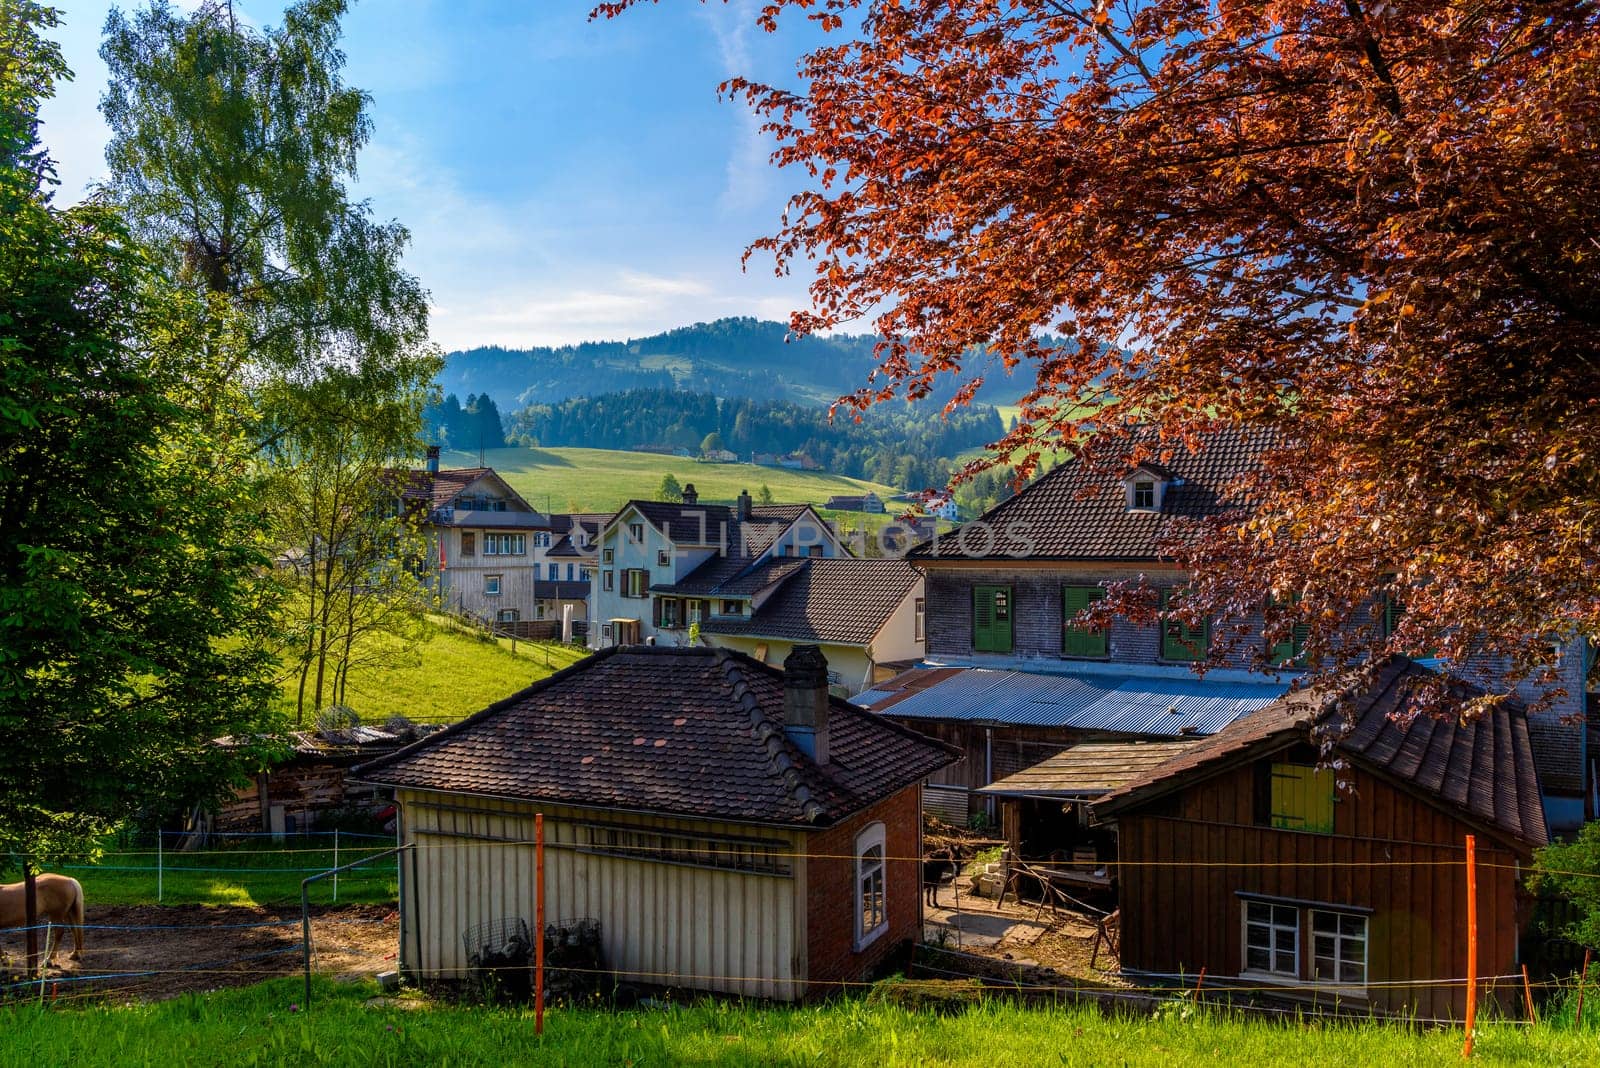 Wooden cottage houses in mountain village, Alt Sankt Johann, Sankt Gallen, Switzerland by Eagle2308